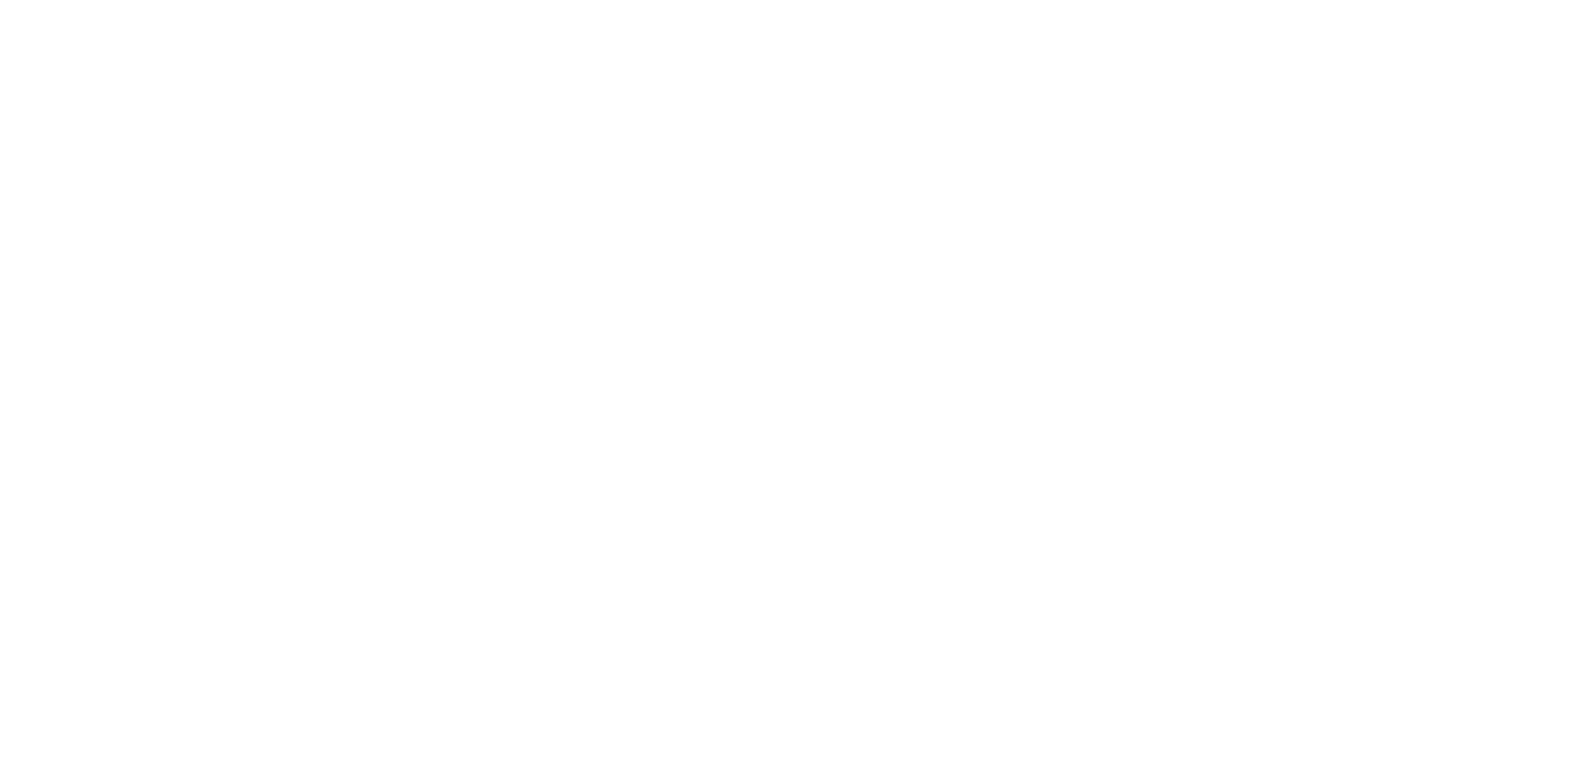 BPESA Member 2021-2023